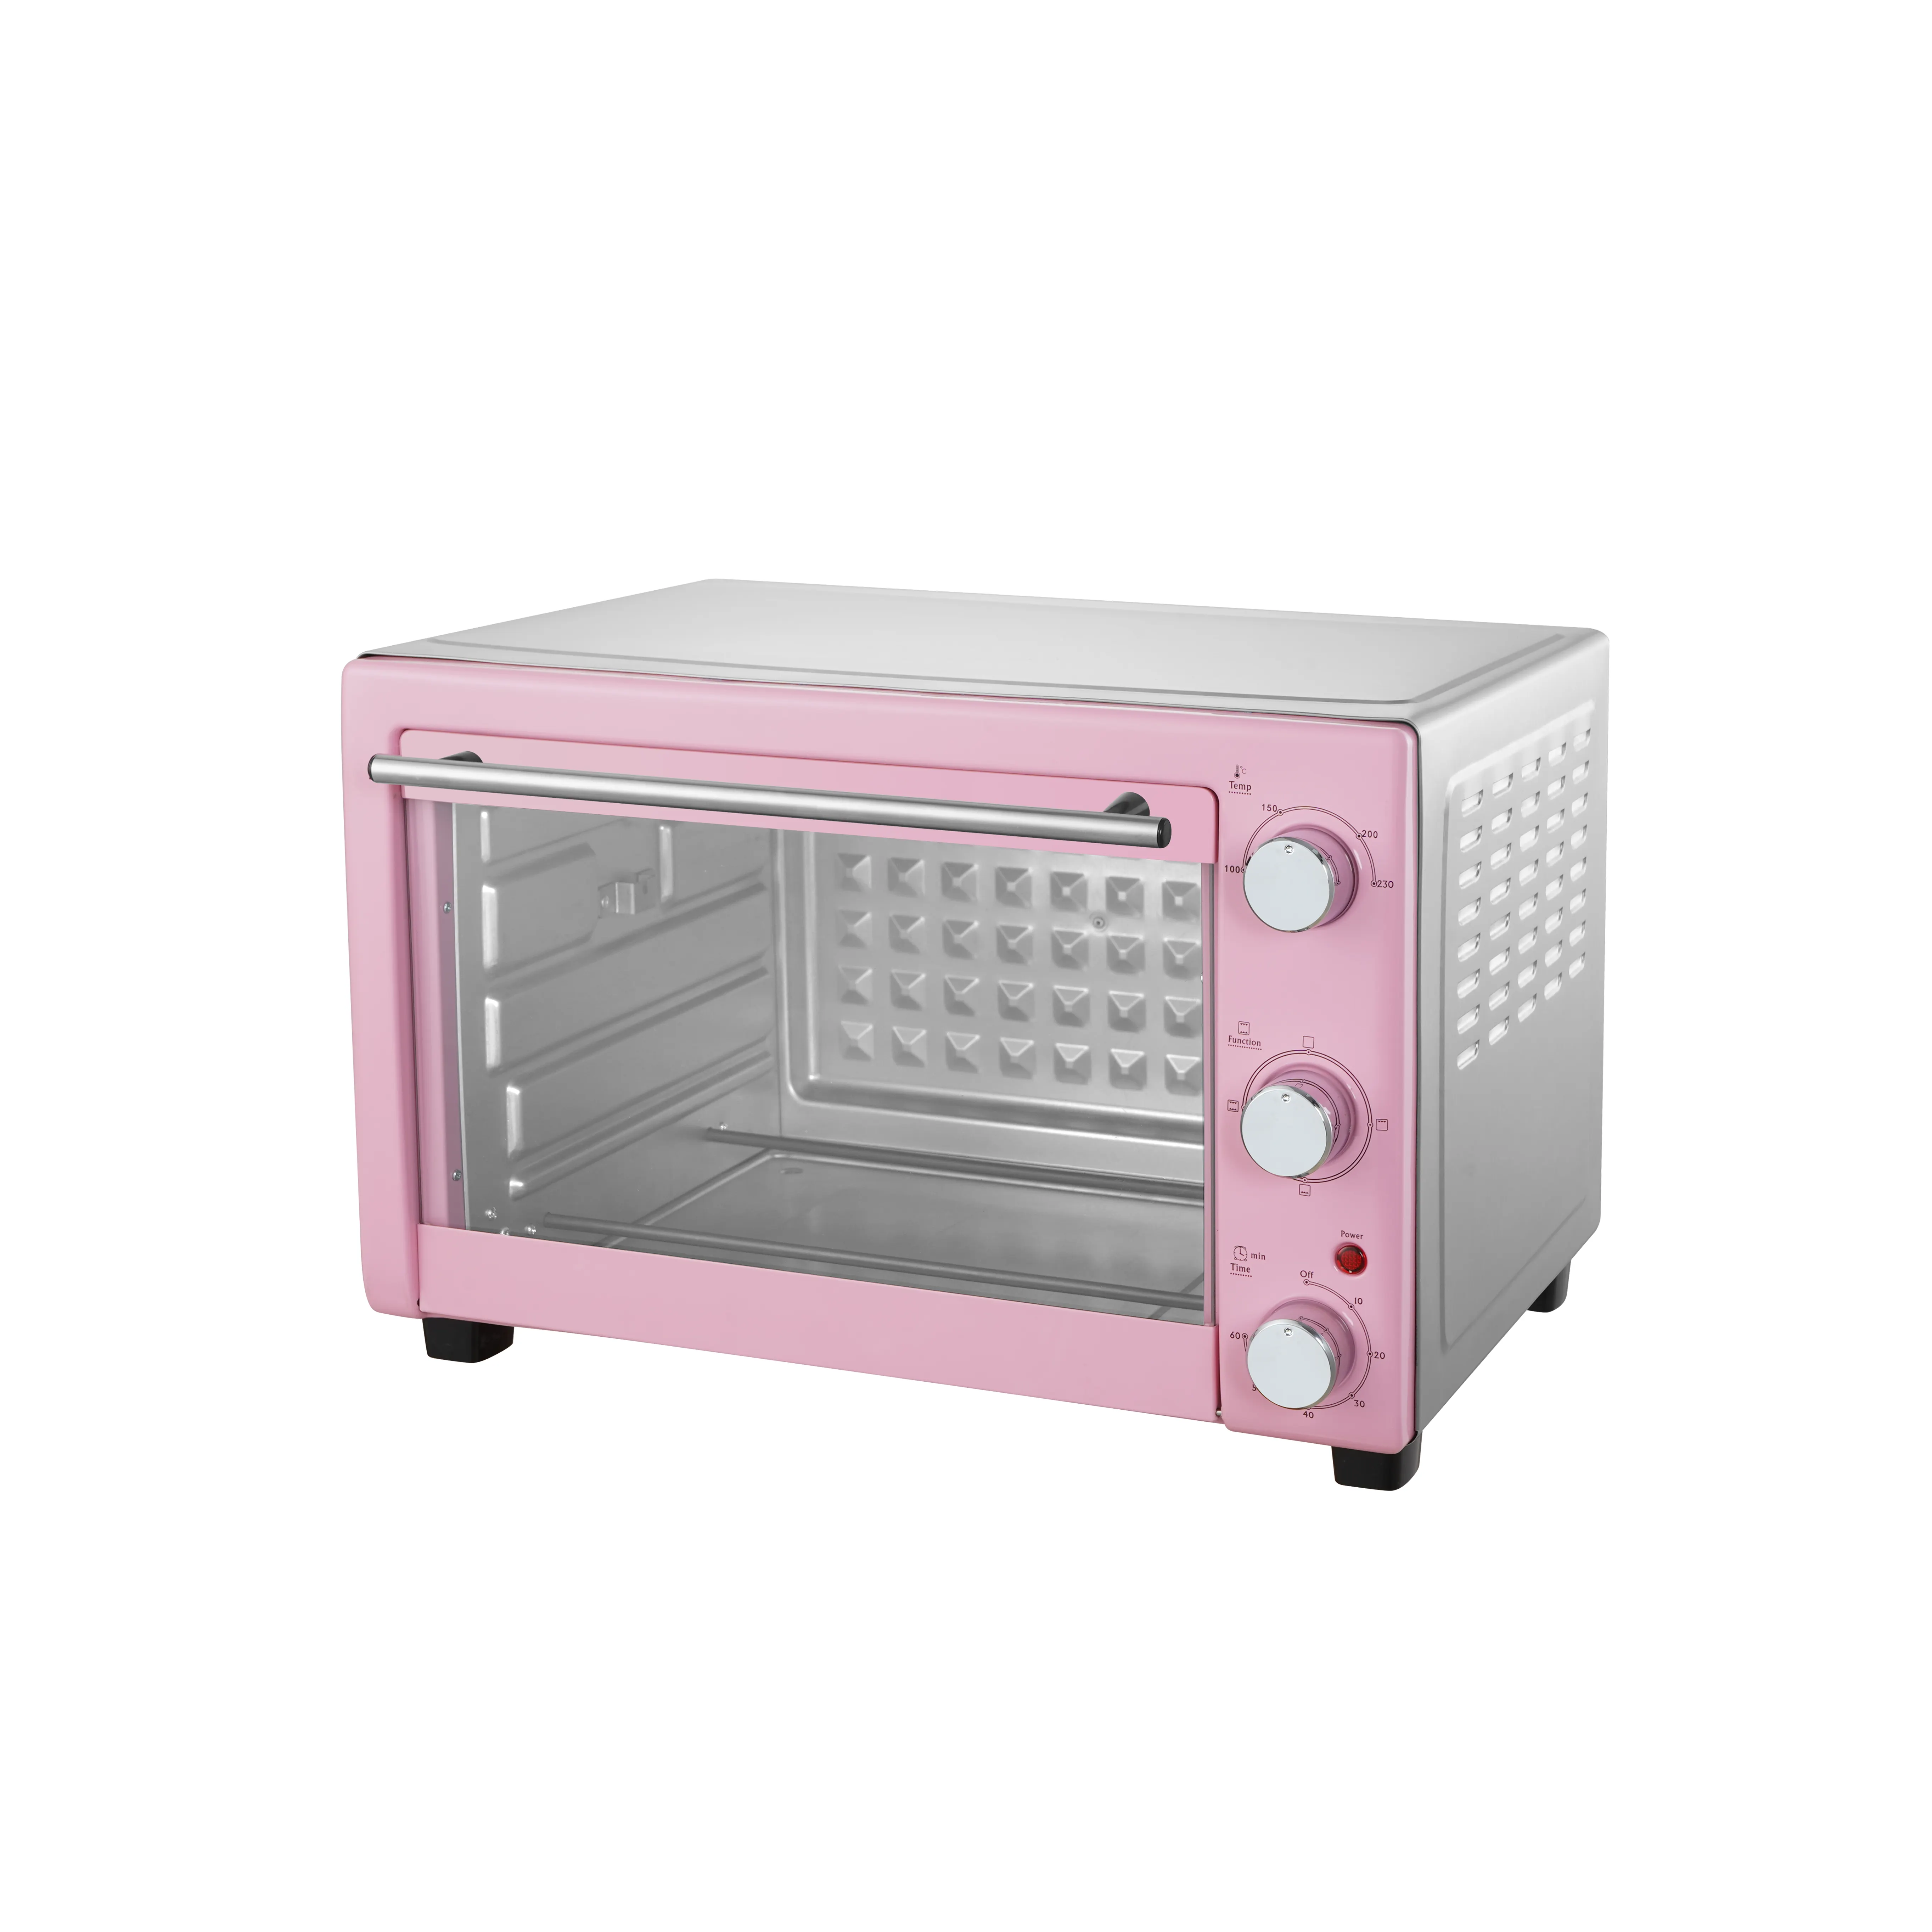 핑크 컬러 가정용 요리 오븐 전기 빵 오븐 불고기 뜨거운 바람 30 리터